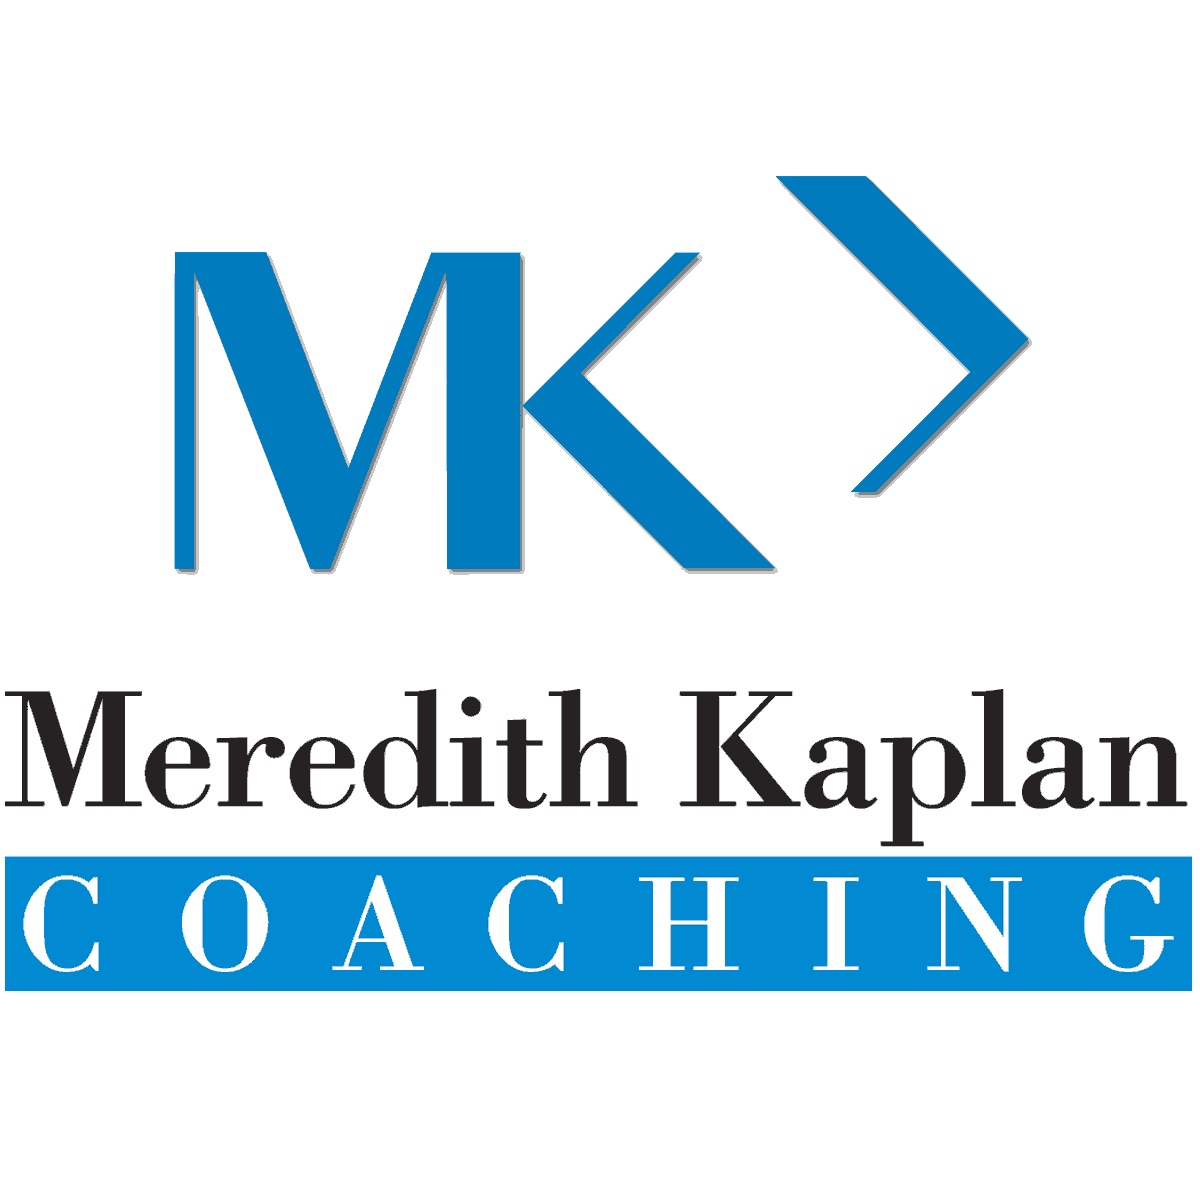 meredity-kaplan-coaching